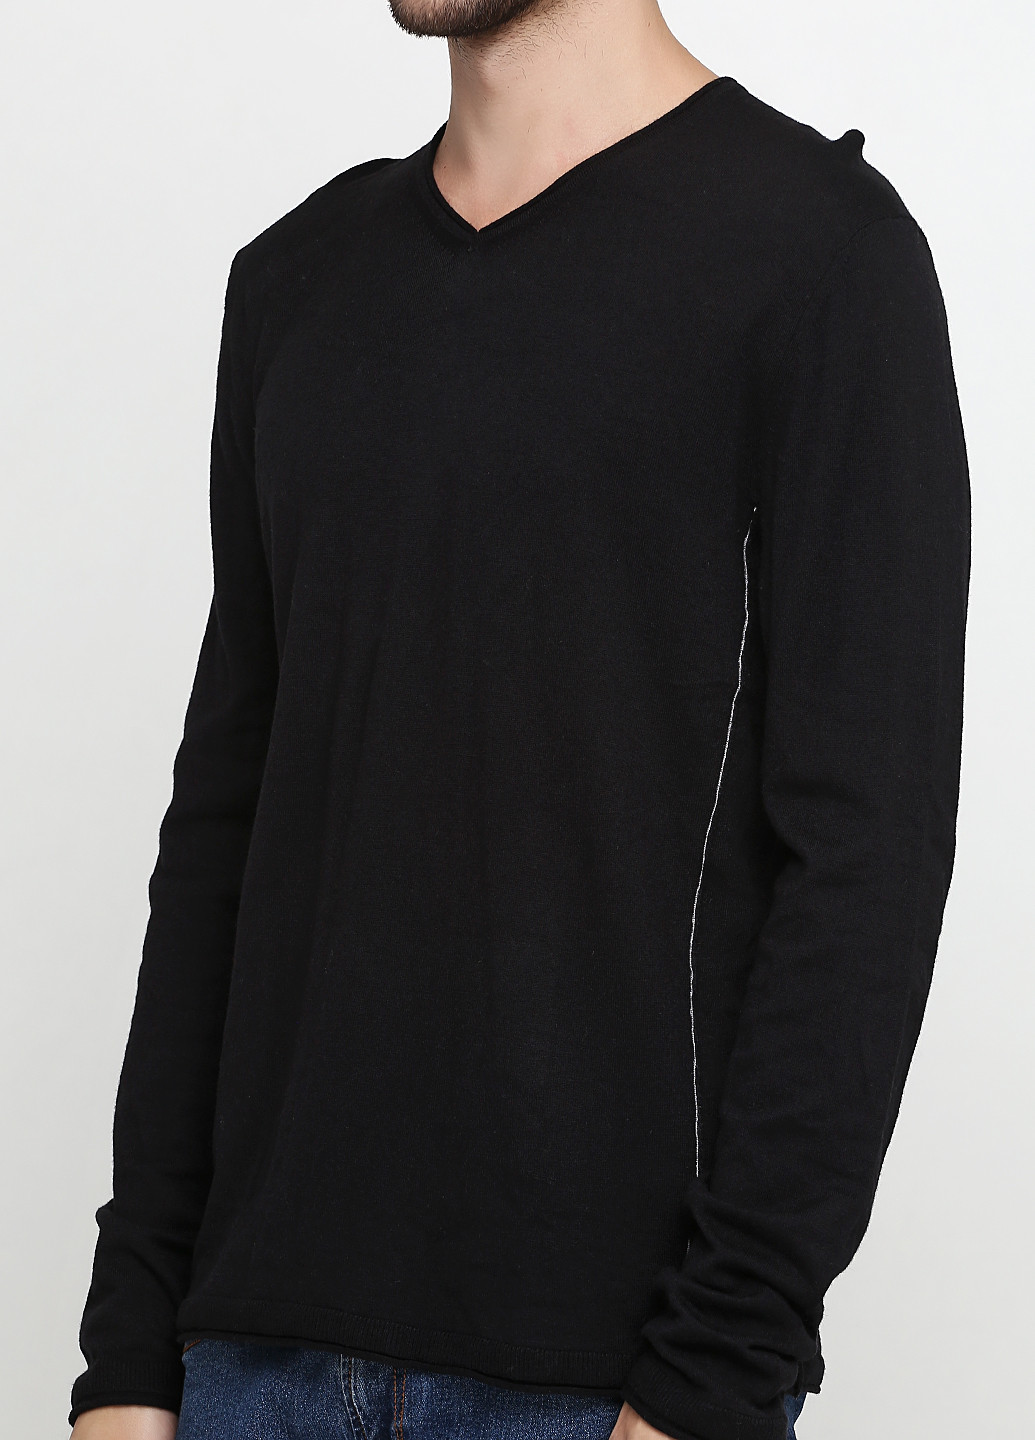 Черный демисезонный пуловер пуловер Sisley